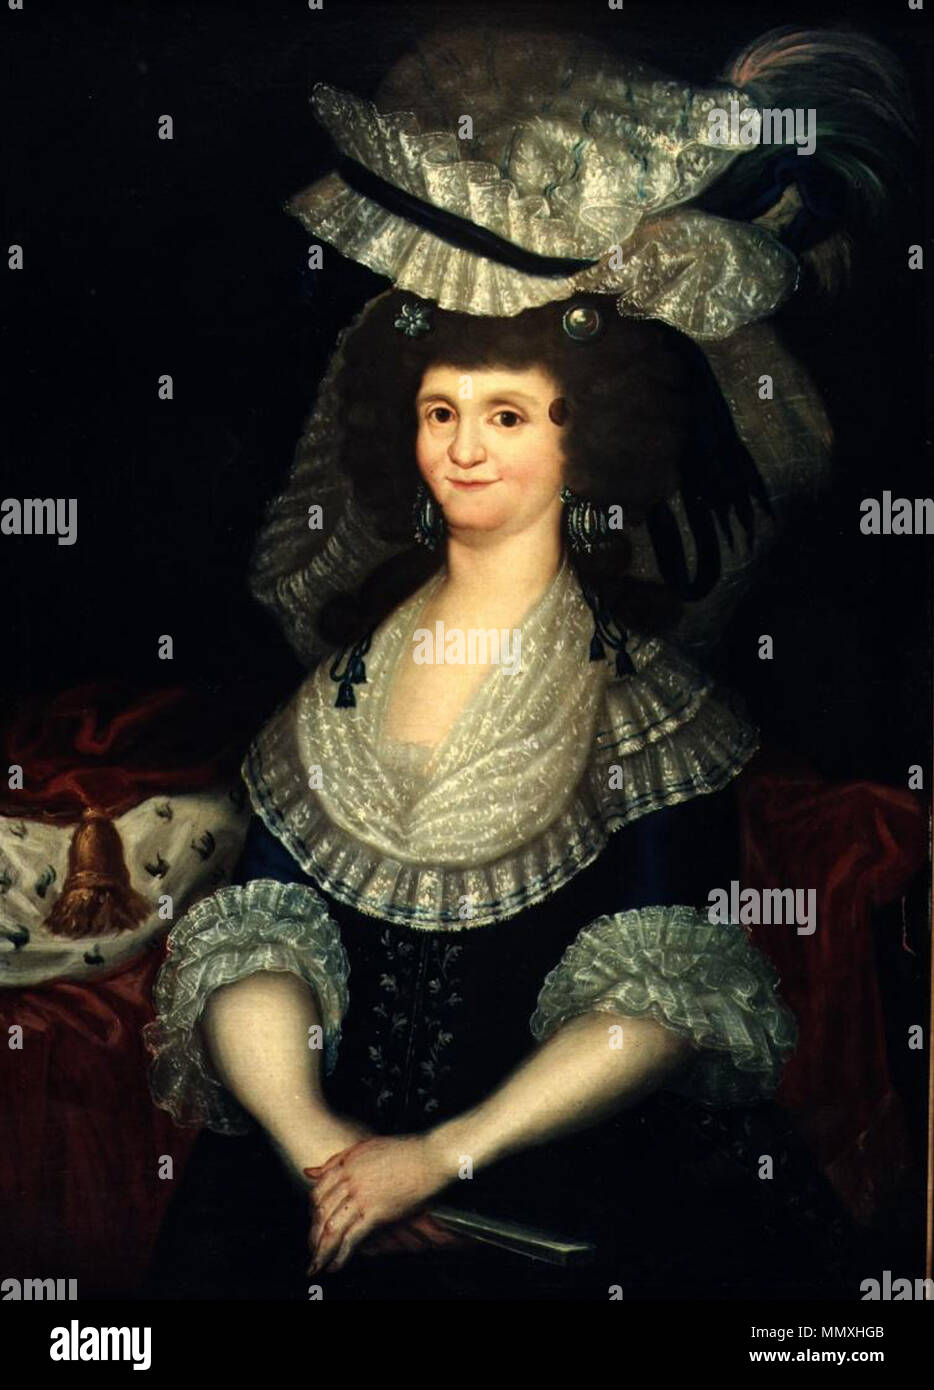 Español: Retrato de la reina María Luisa de Parma (1751-1819), que fue la  única esposa del rey Carlos IV de España, y la madre de Fernando VII. La  reina María Luisa